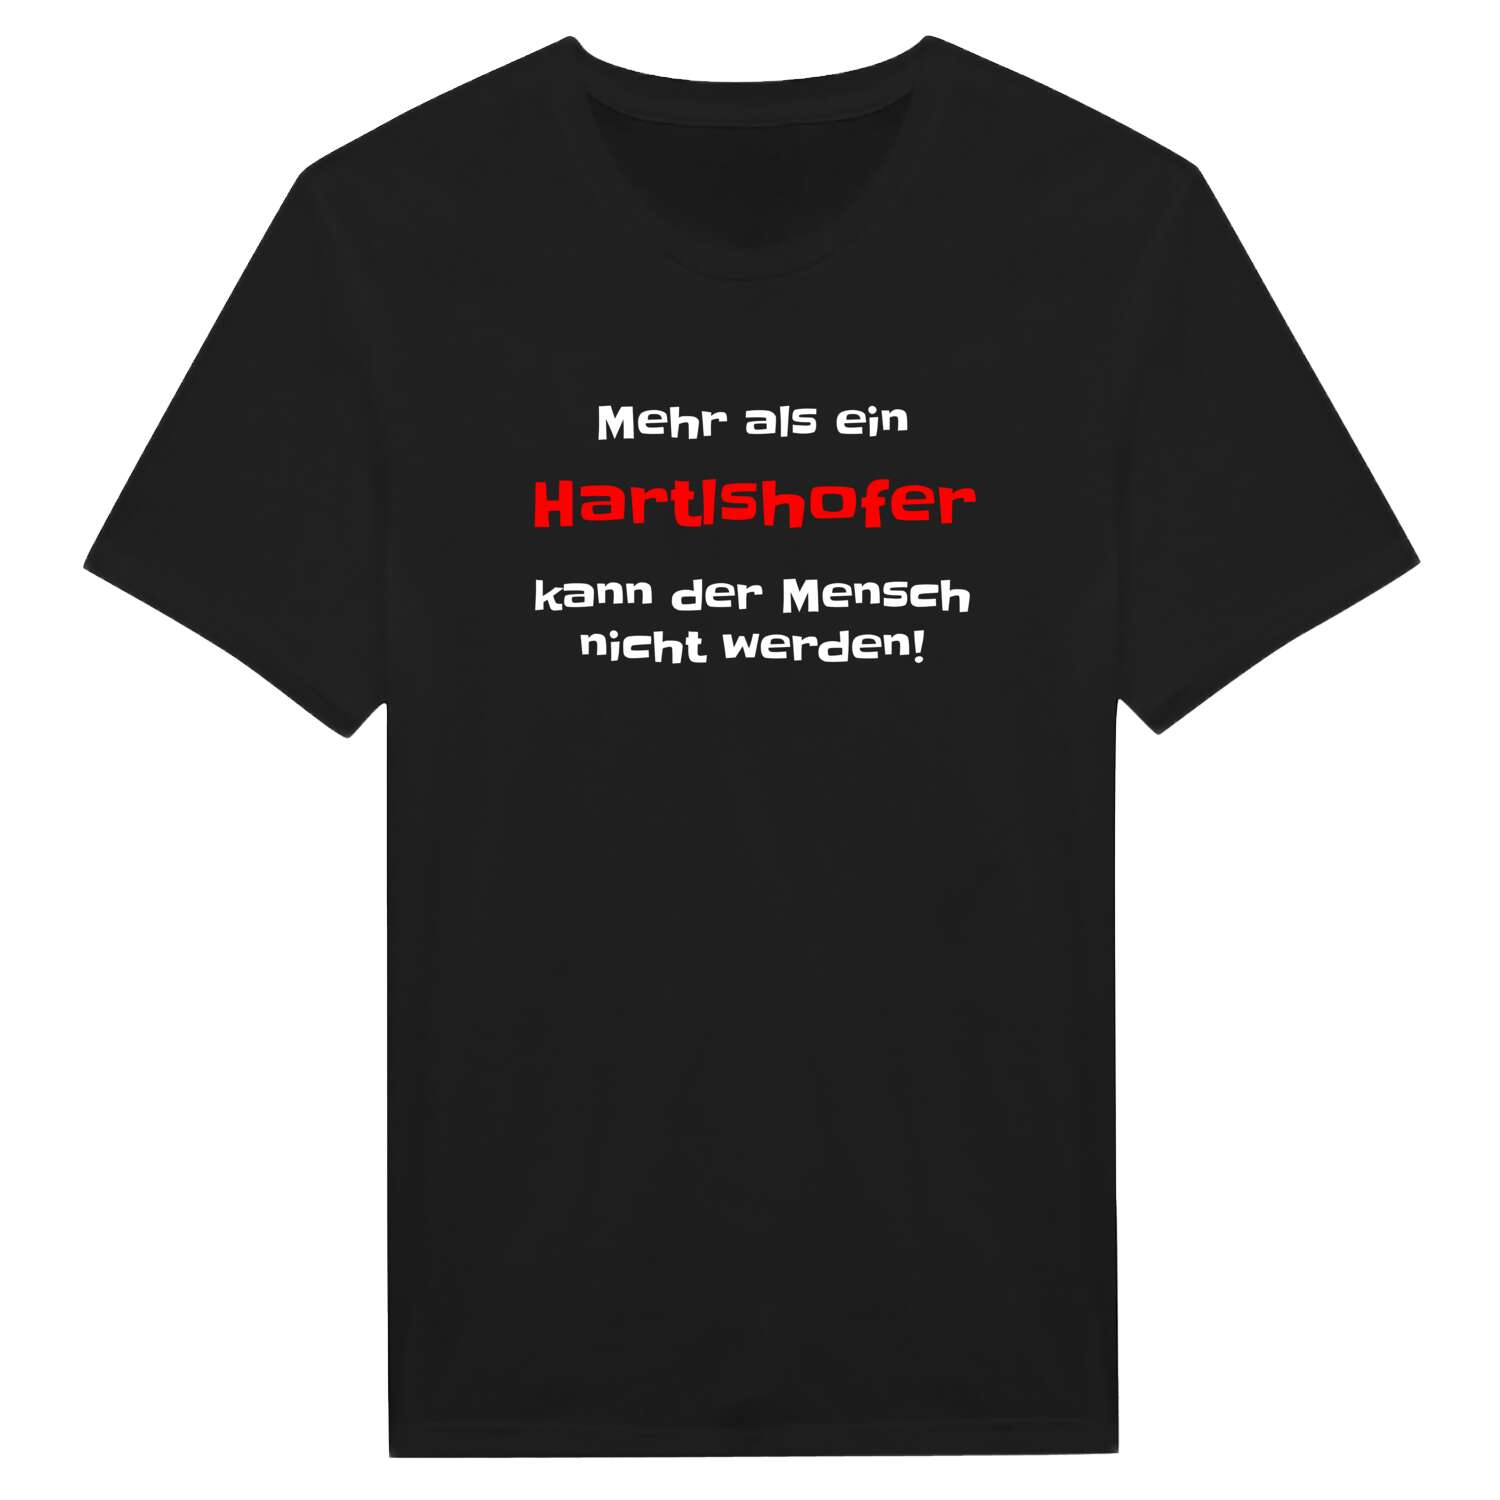 Hartlshof T-Shirt »Mehr als ein«